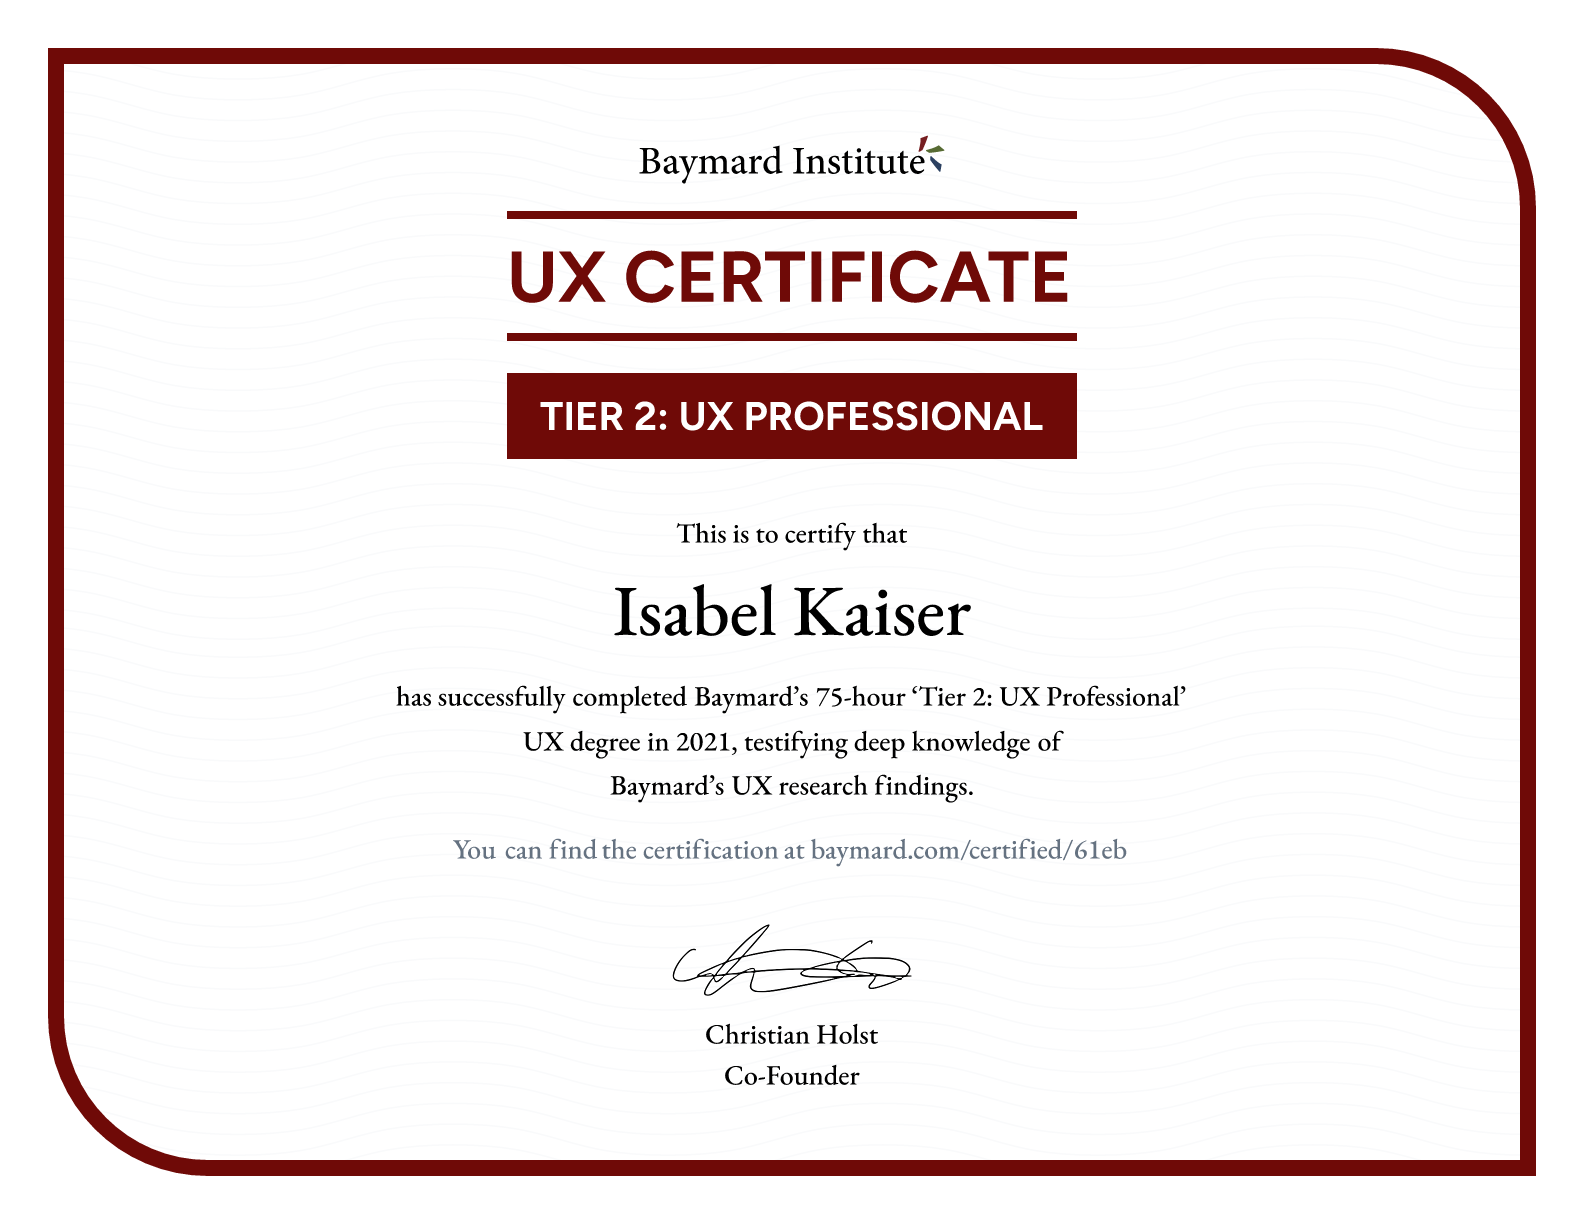 Isabel Kaiser’s certificate